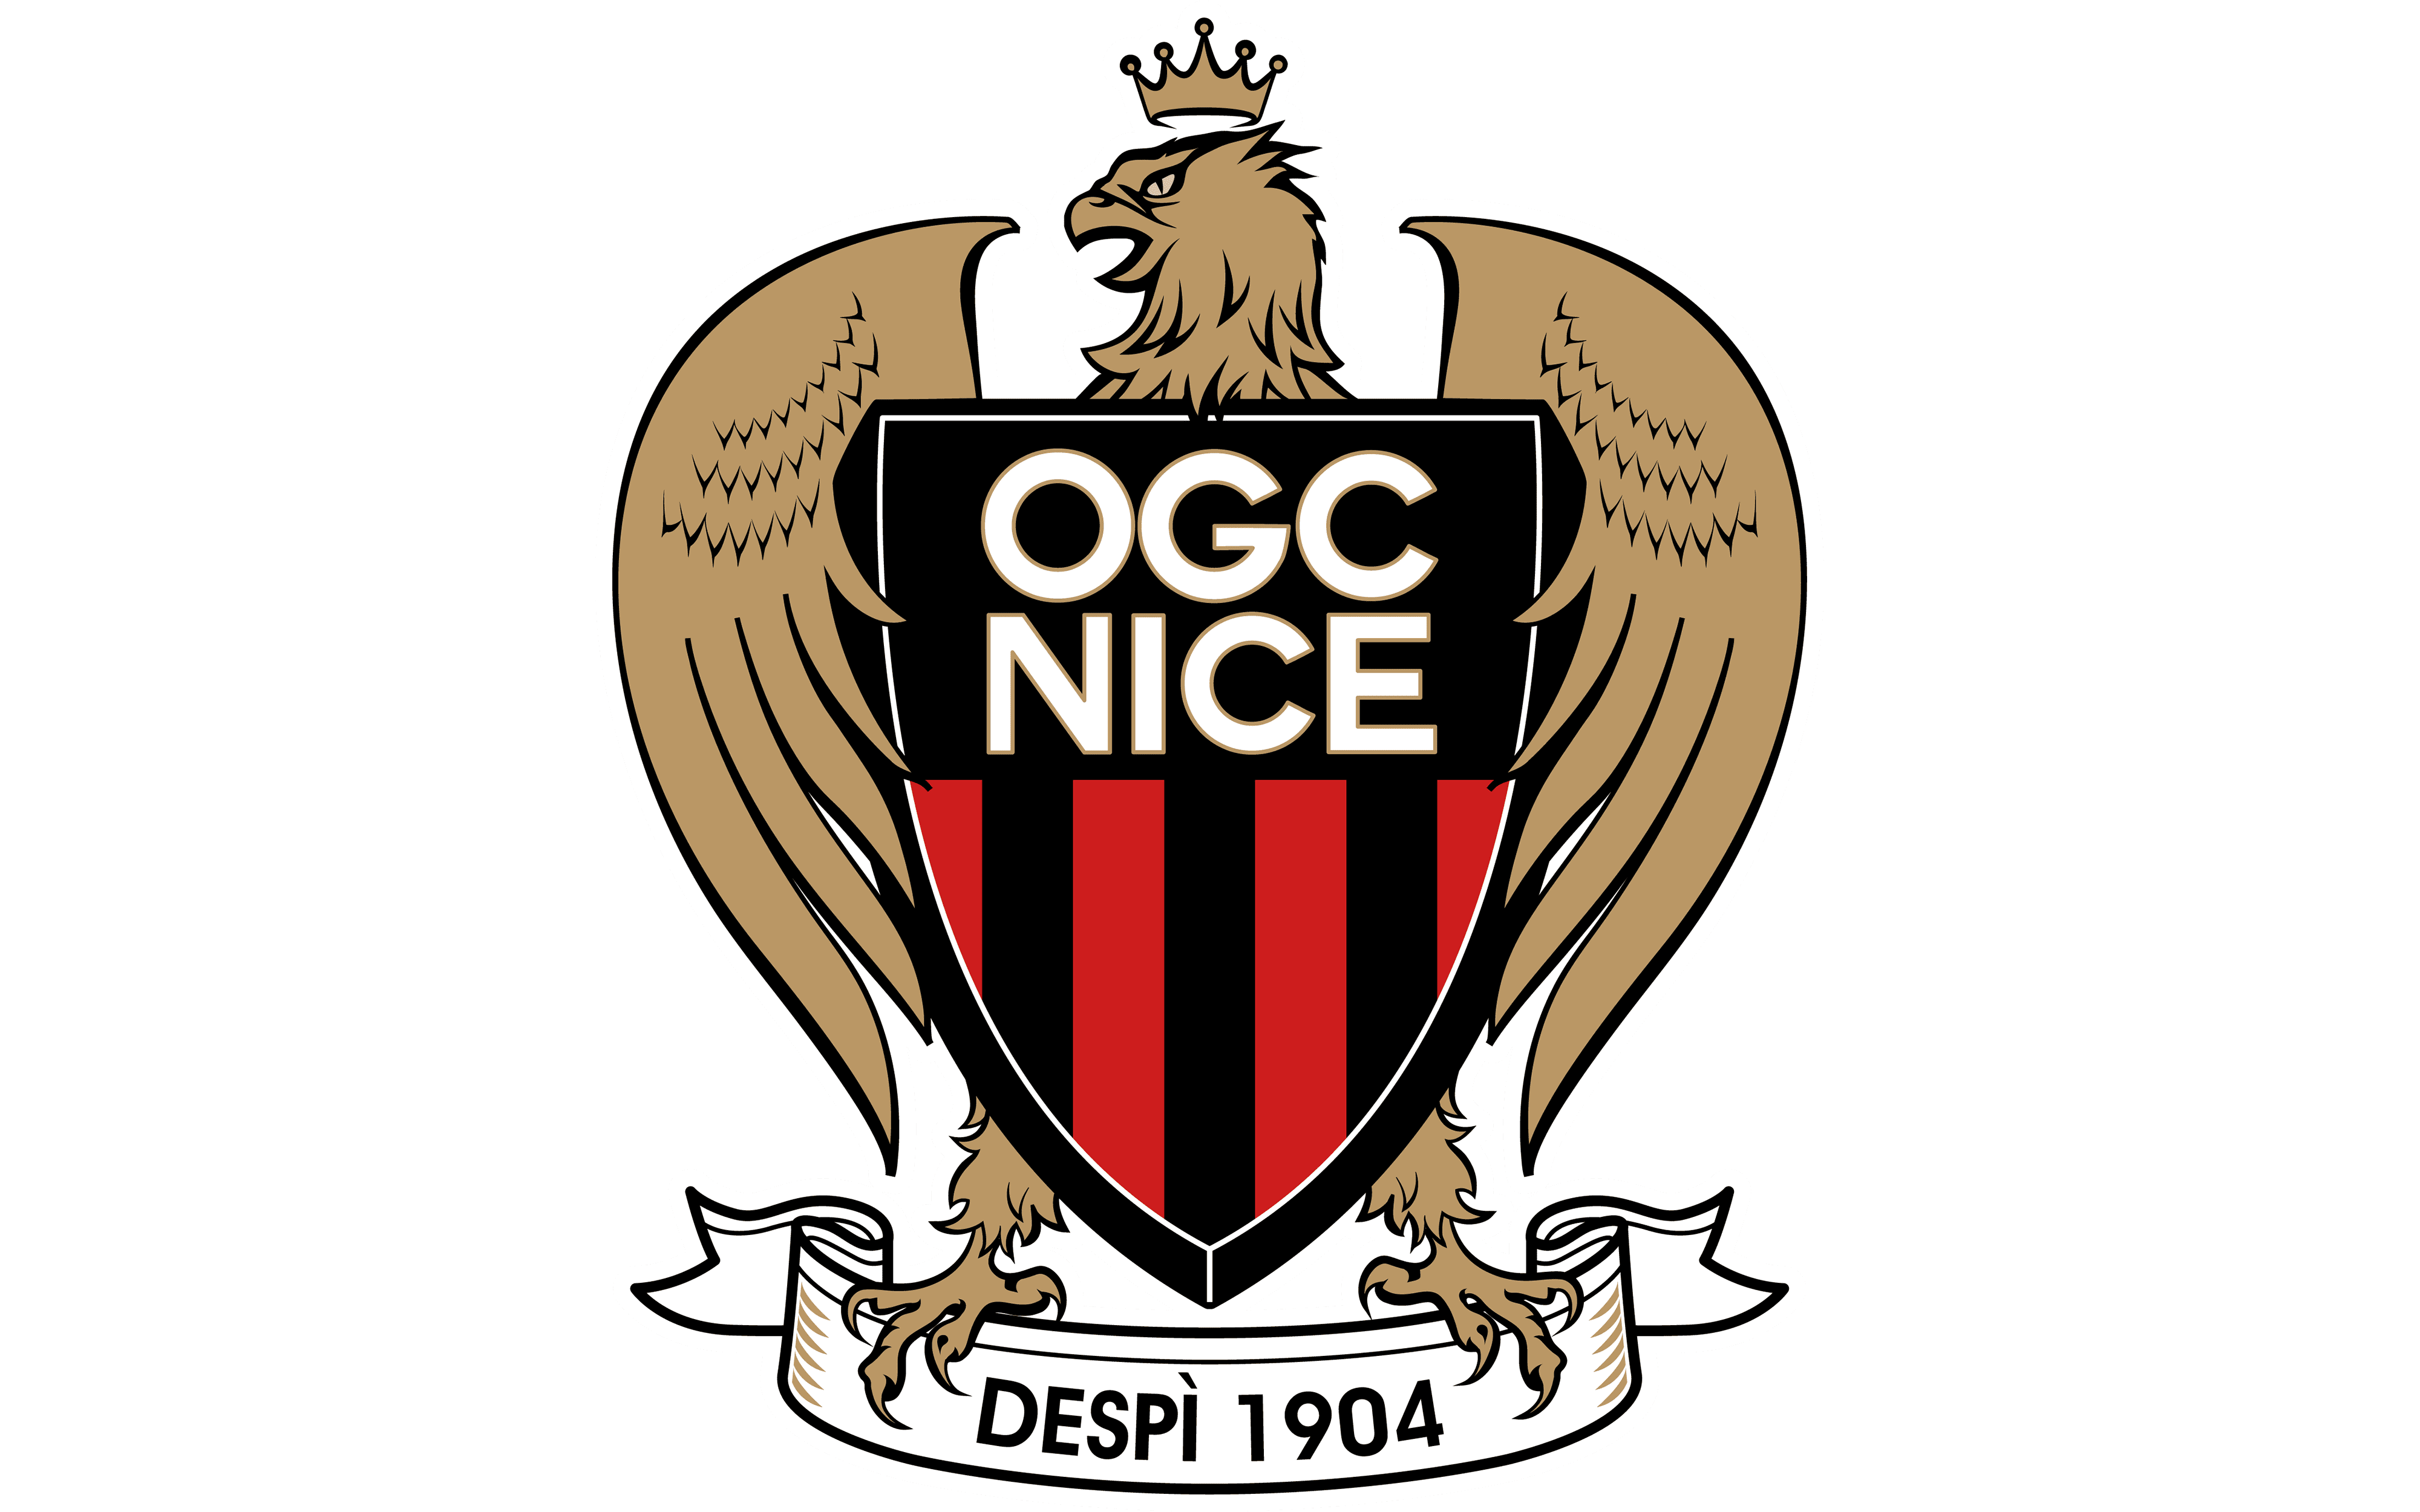 01. OGC Nice